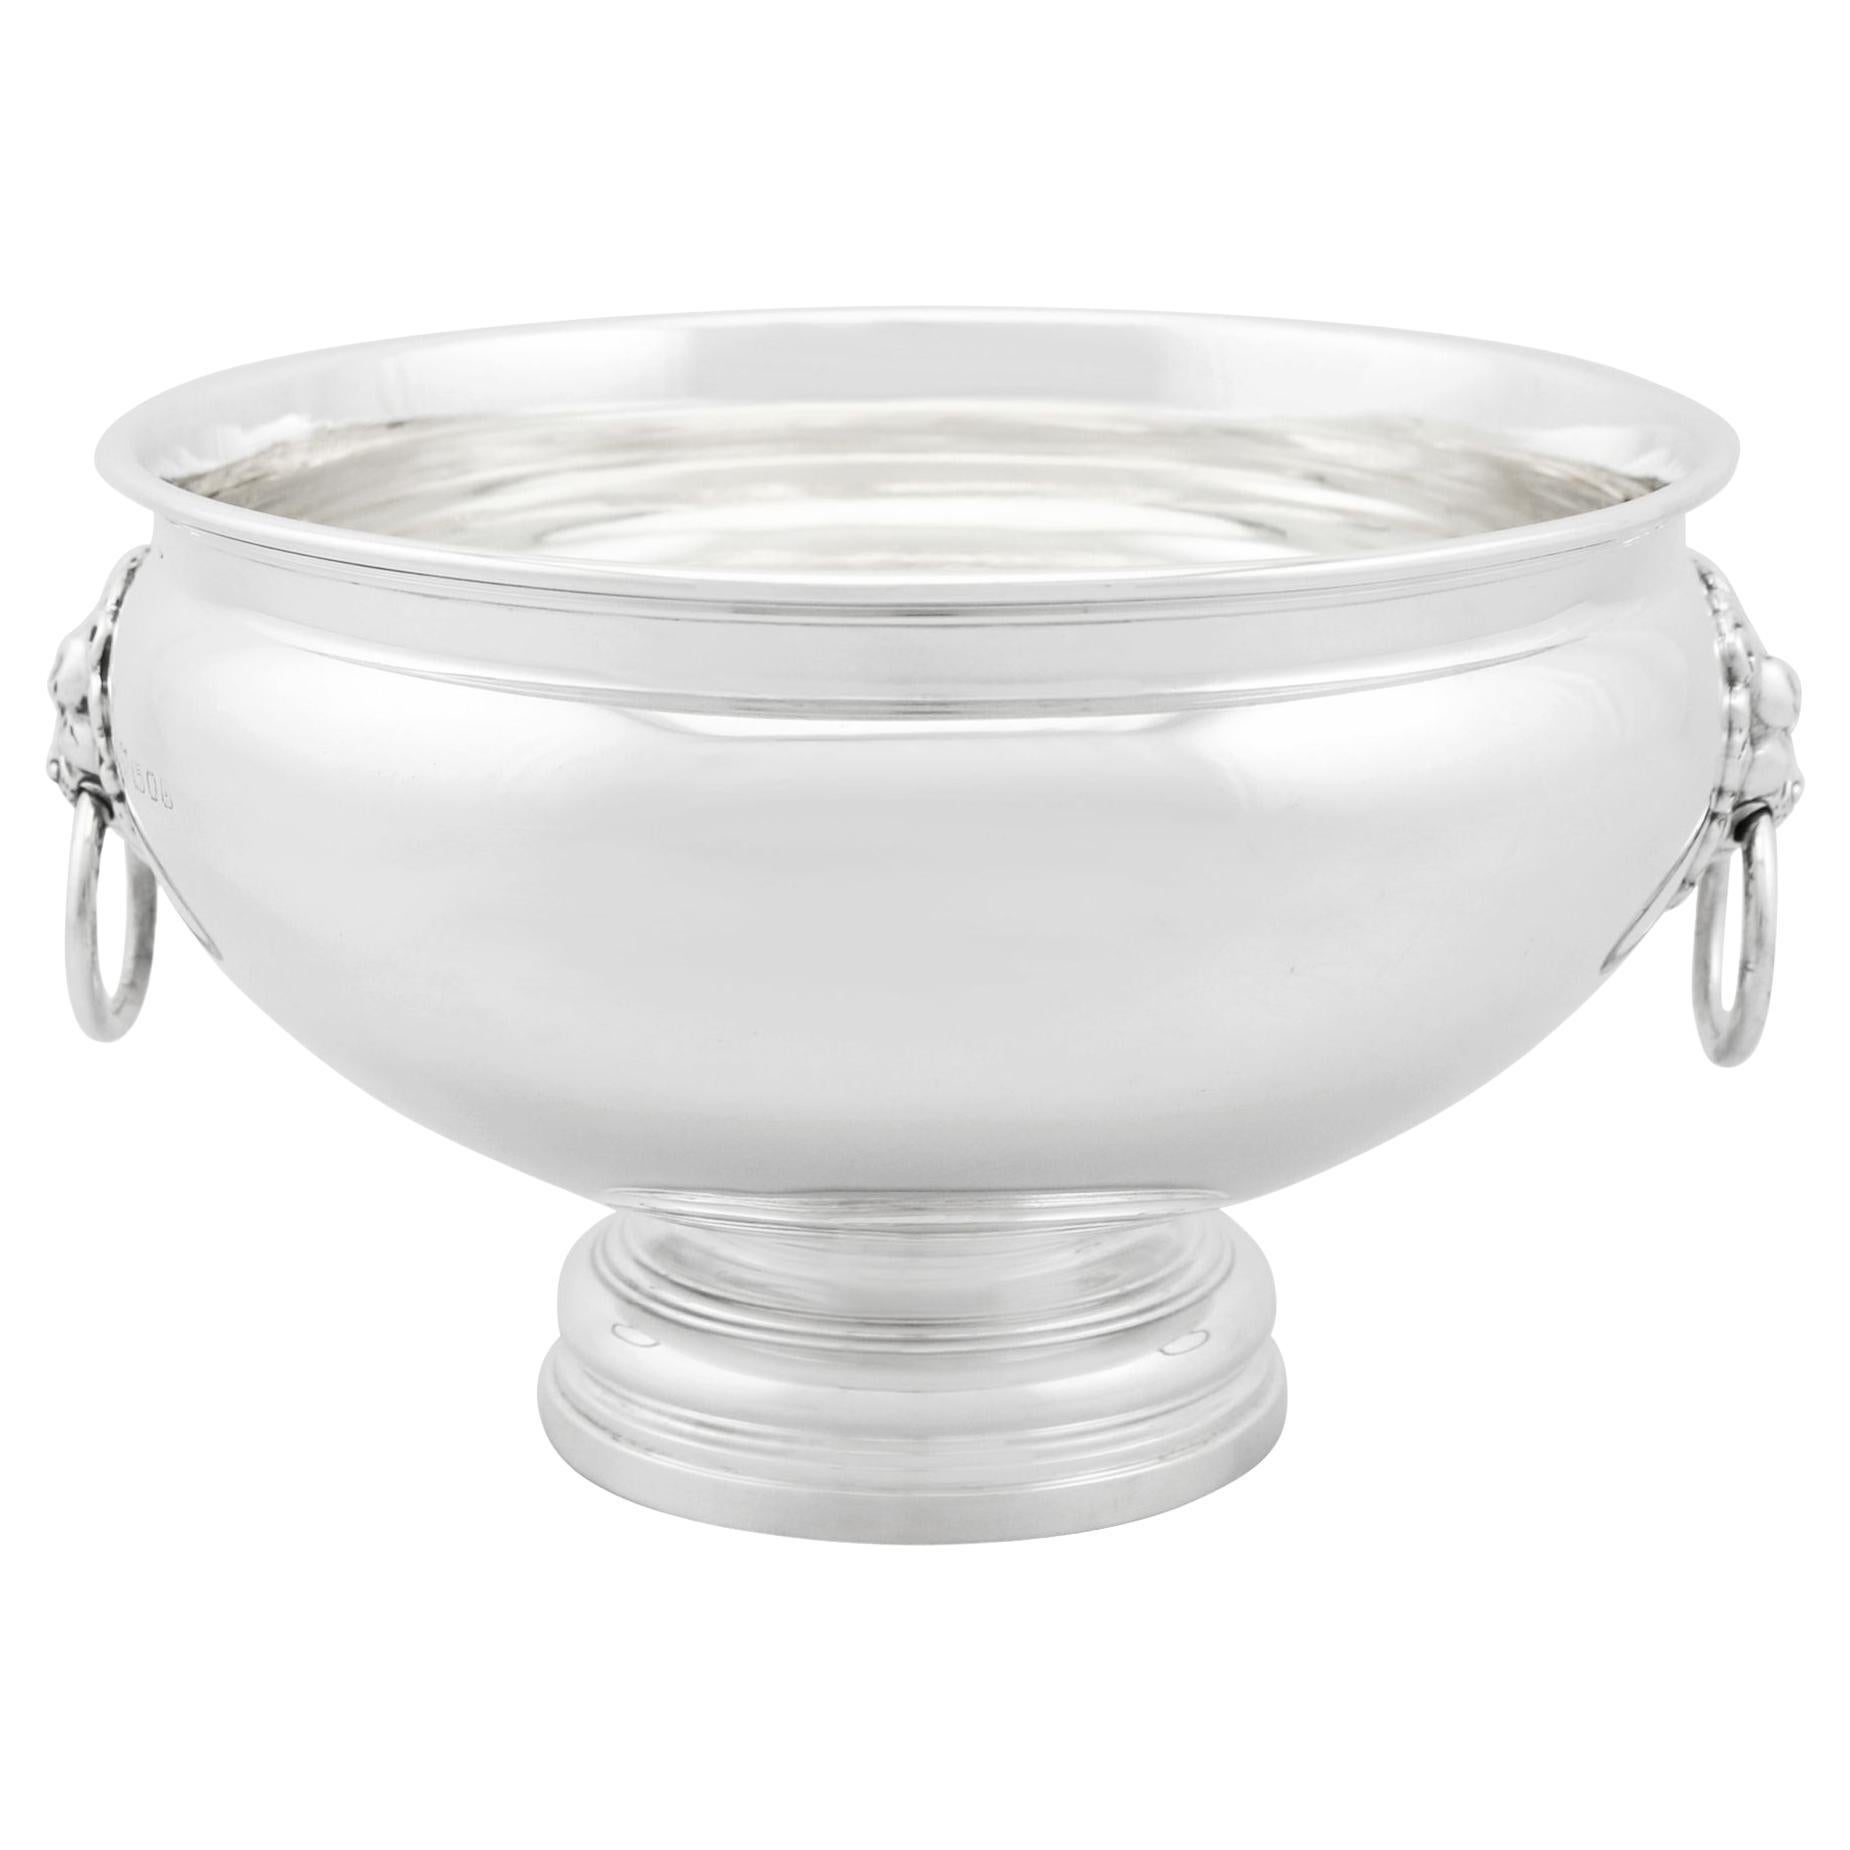 1930s Harrods Ltd Sterling Silver Presentation Bowl For Sale